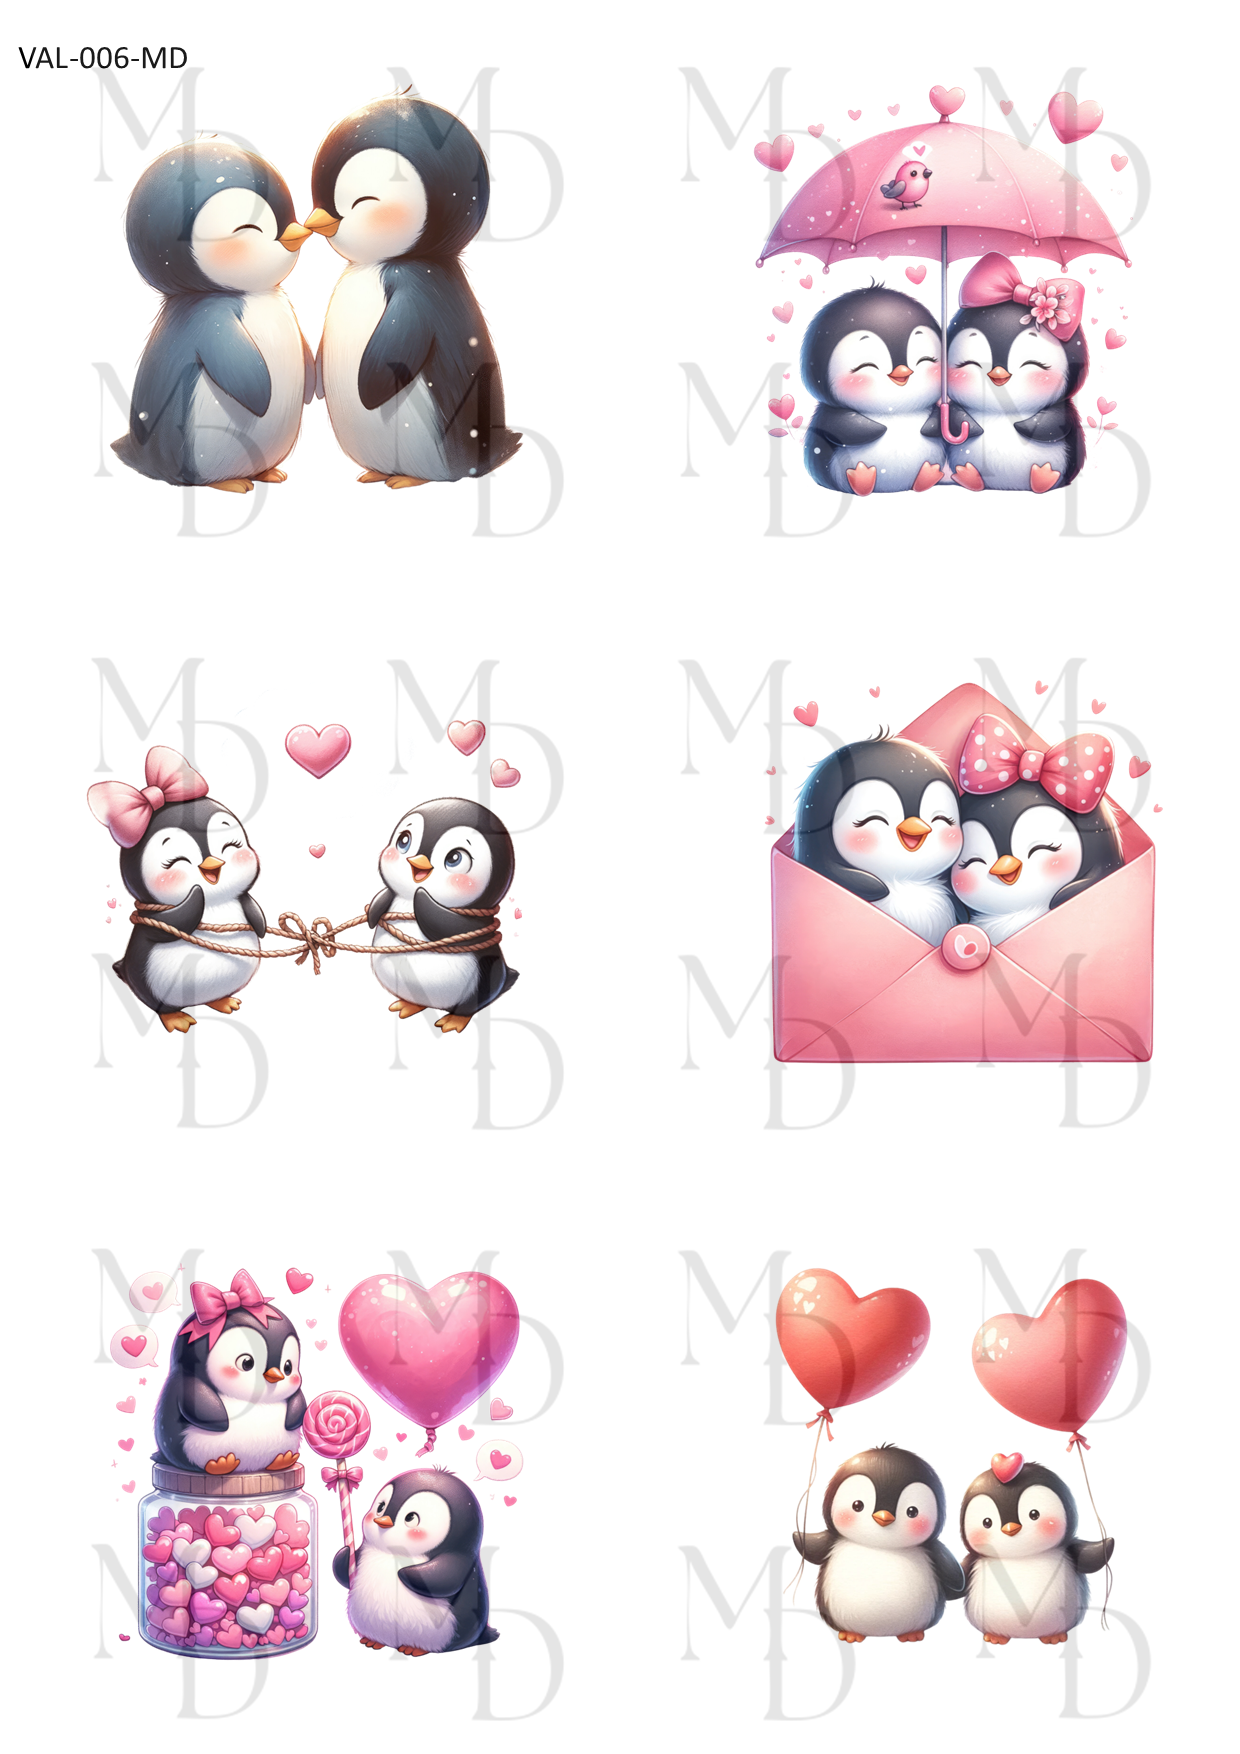 VAL-006-MD Love penguins